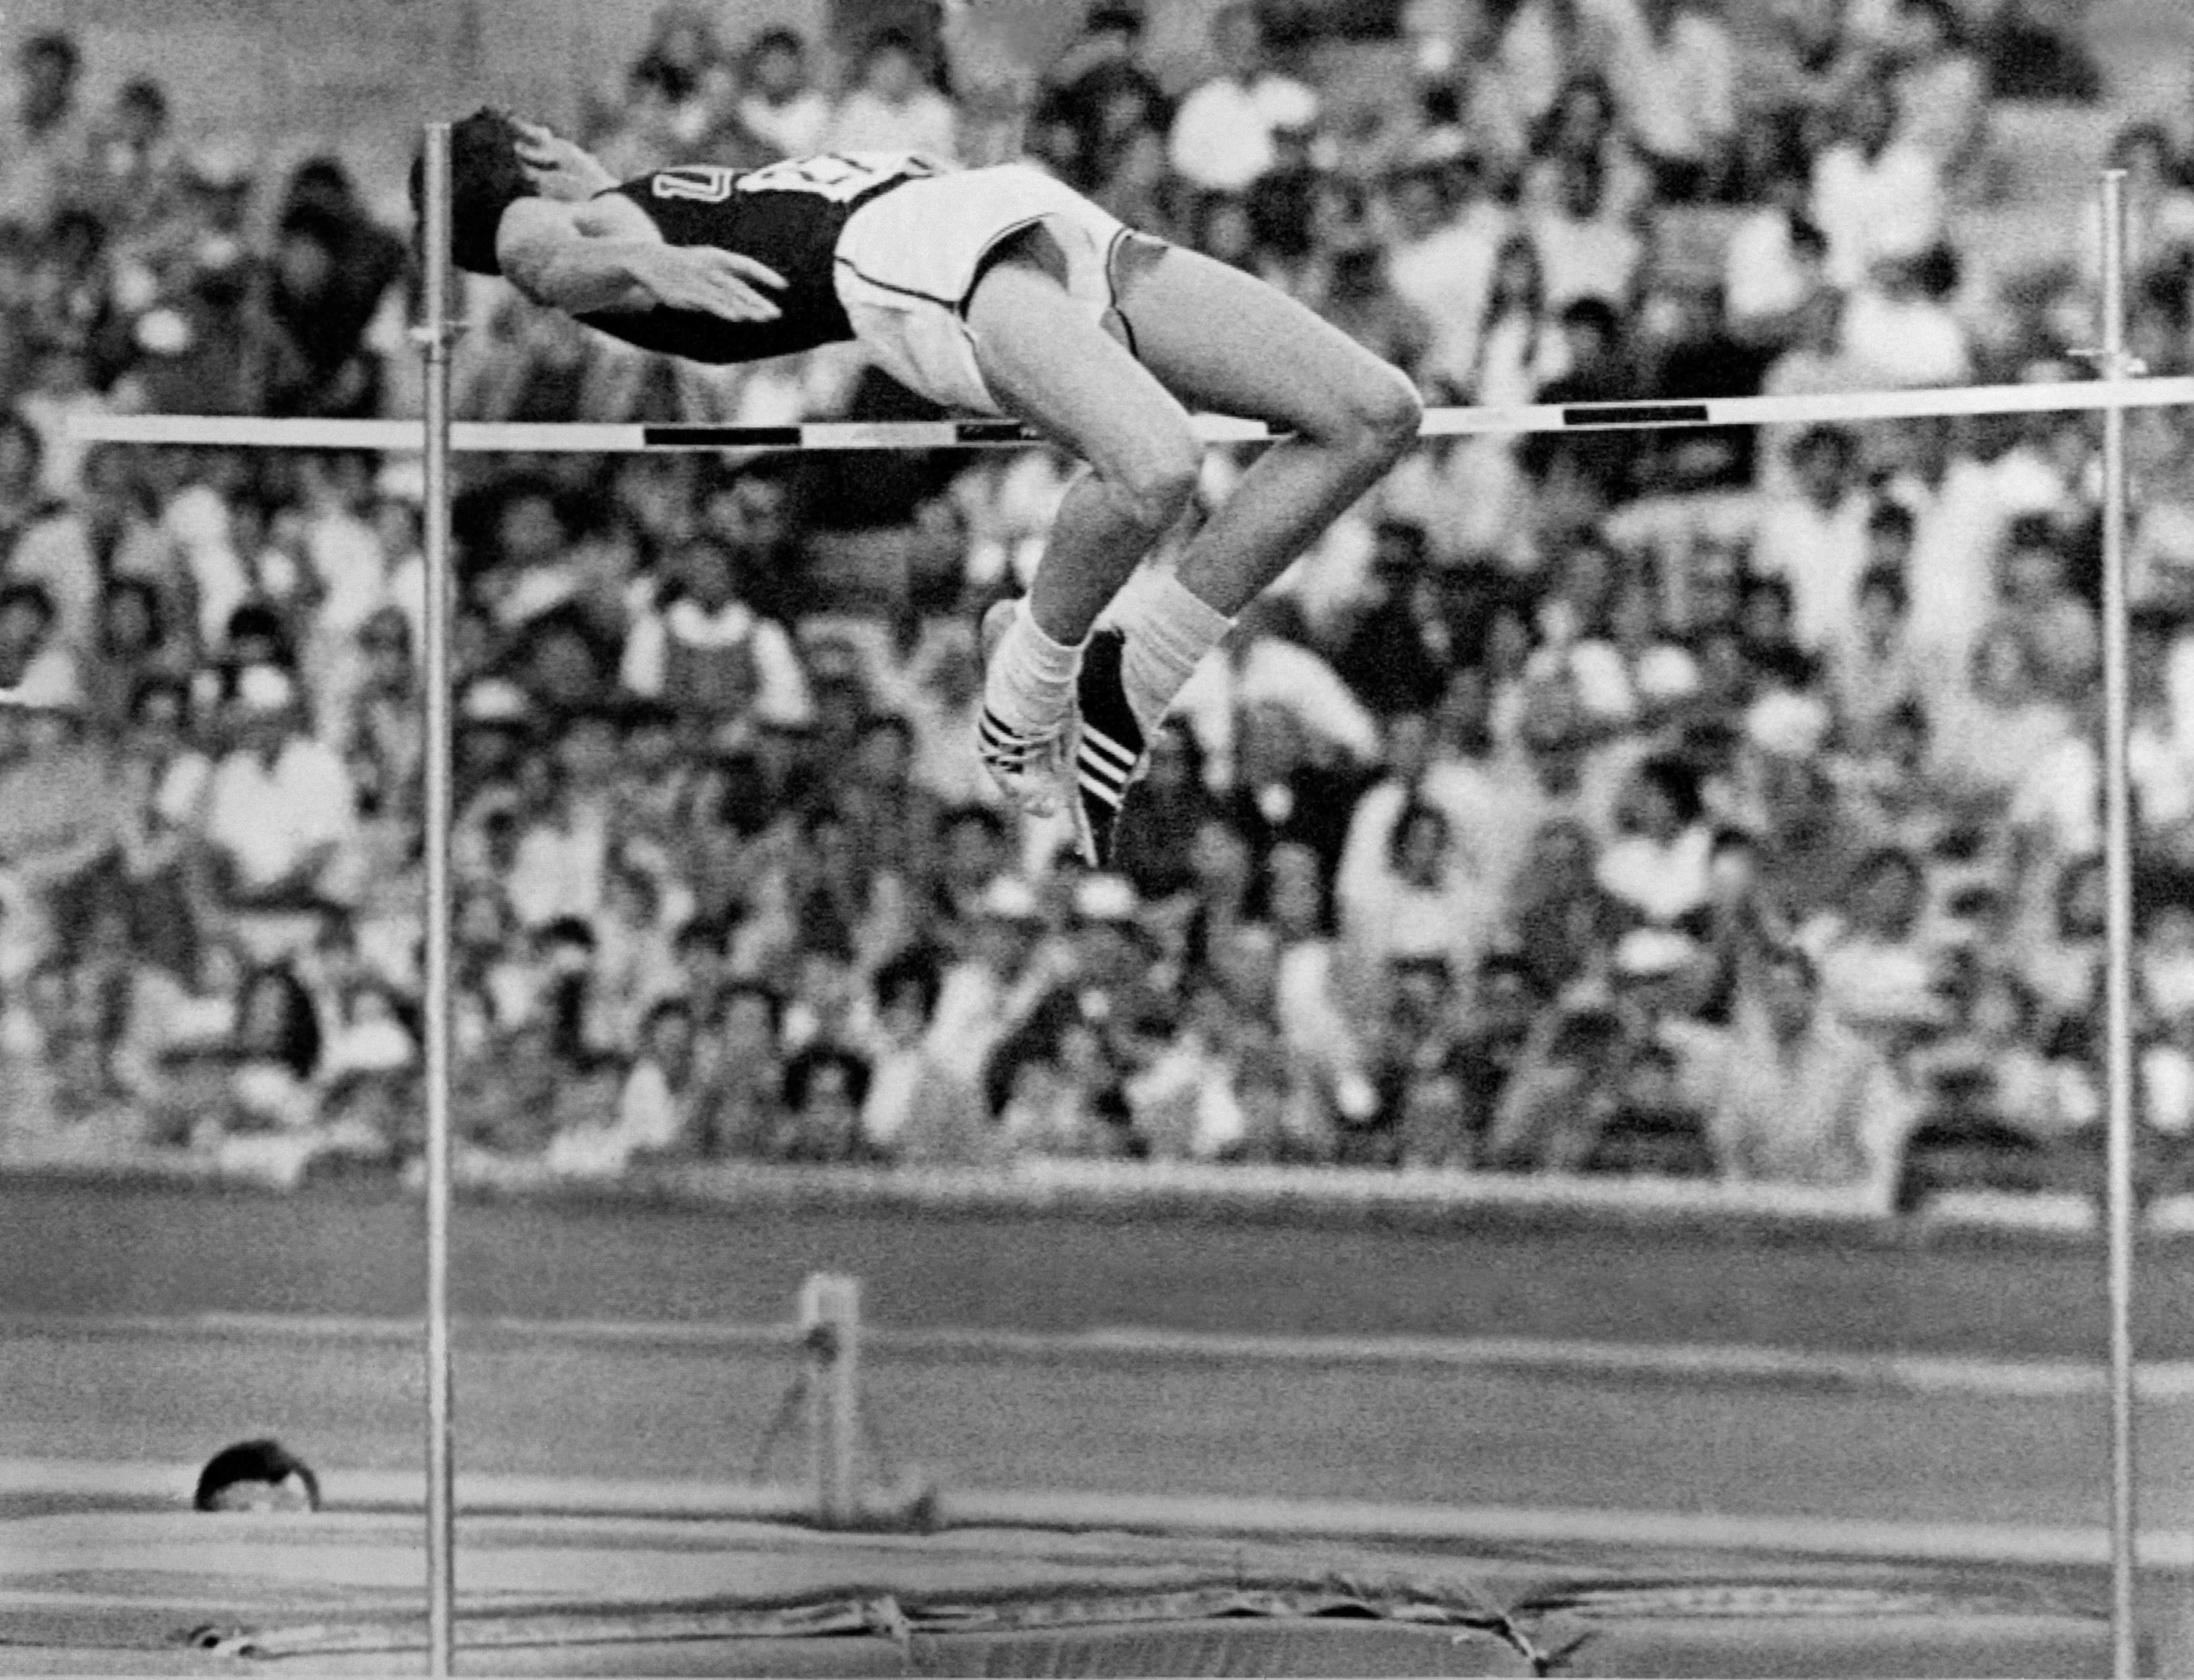 Almarhum atlet Amerika Dick Fosbury berkompetisi di final lompat tinggi putra dan memenangkan medali emas dengan gaya lompat baru di Pertandingan Olimpiade Meksiko, Mexico City, Meksiko, 20 Oktober 1968. (AFP Photo)